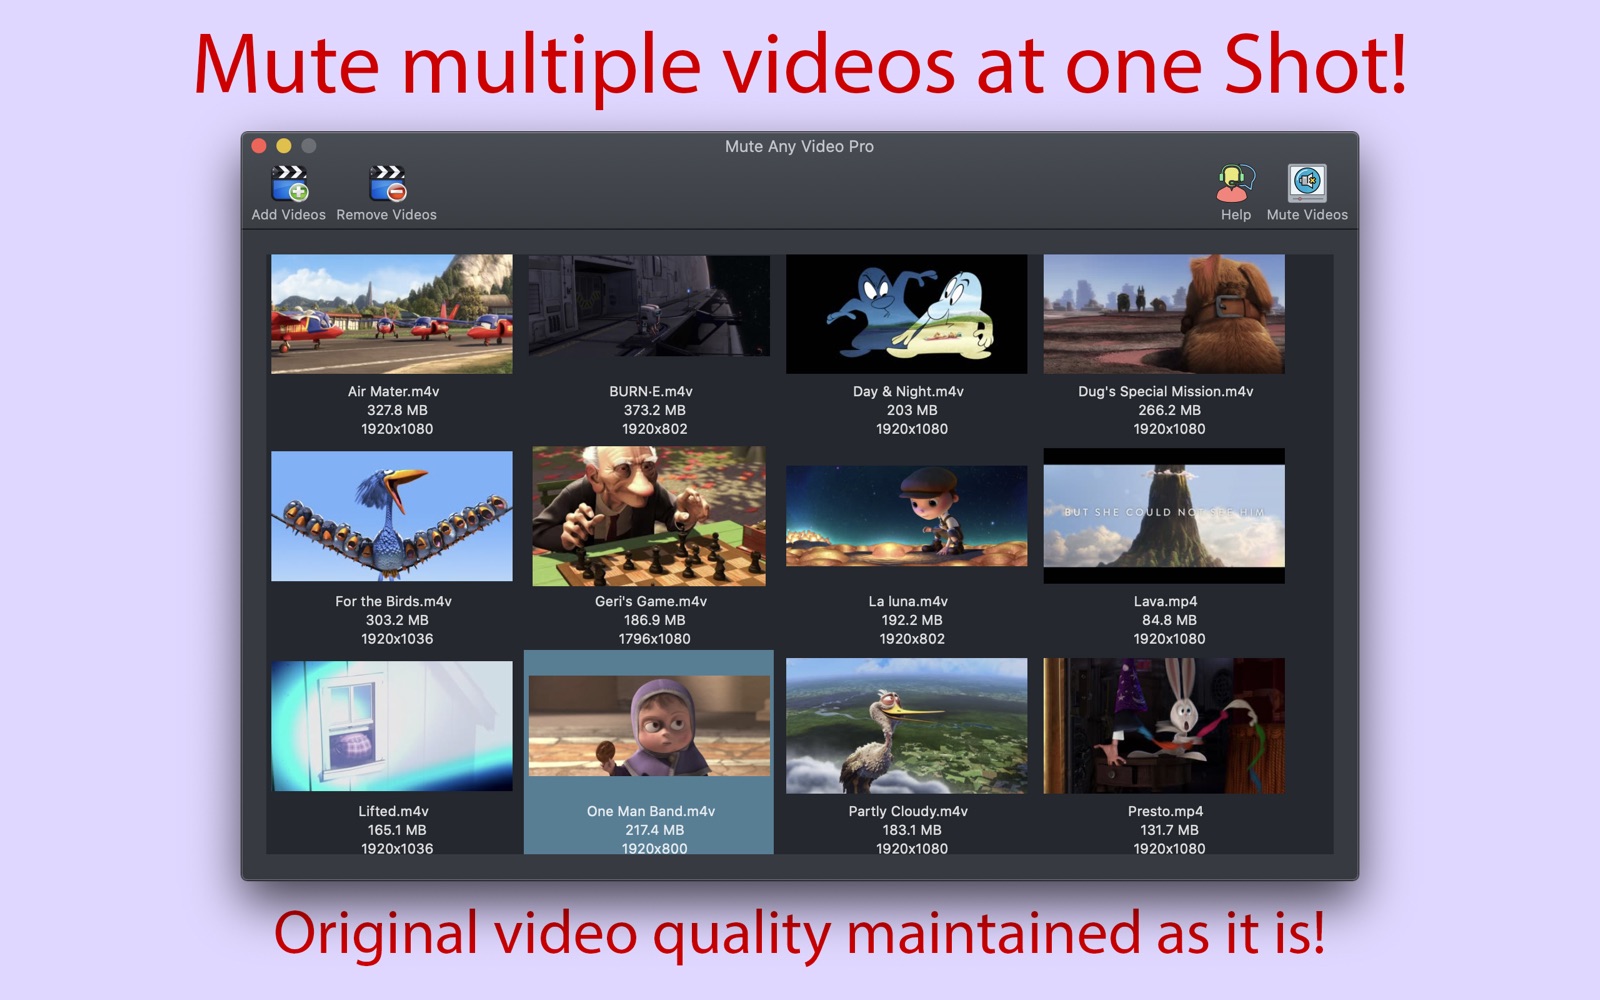 Mute Any Video Pro 2.0 : Main Window